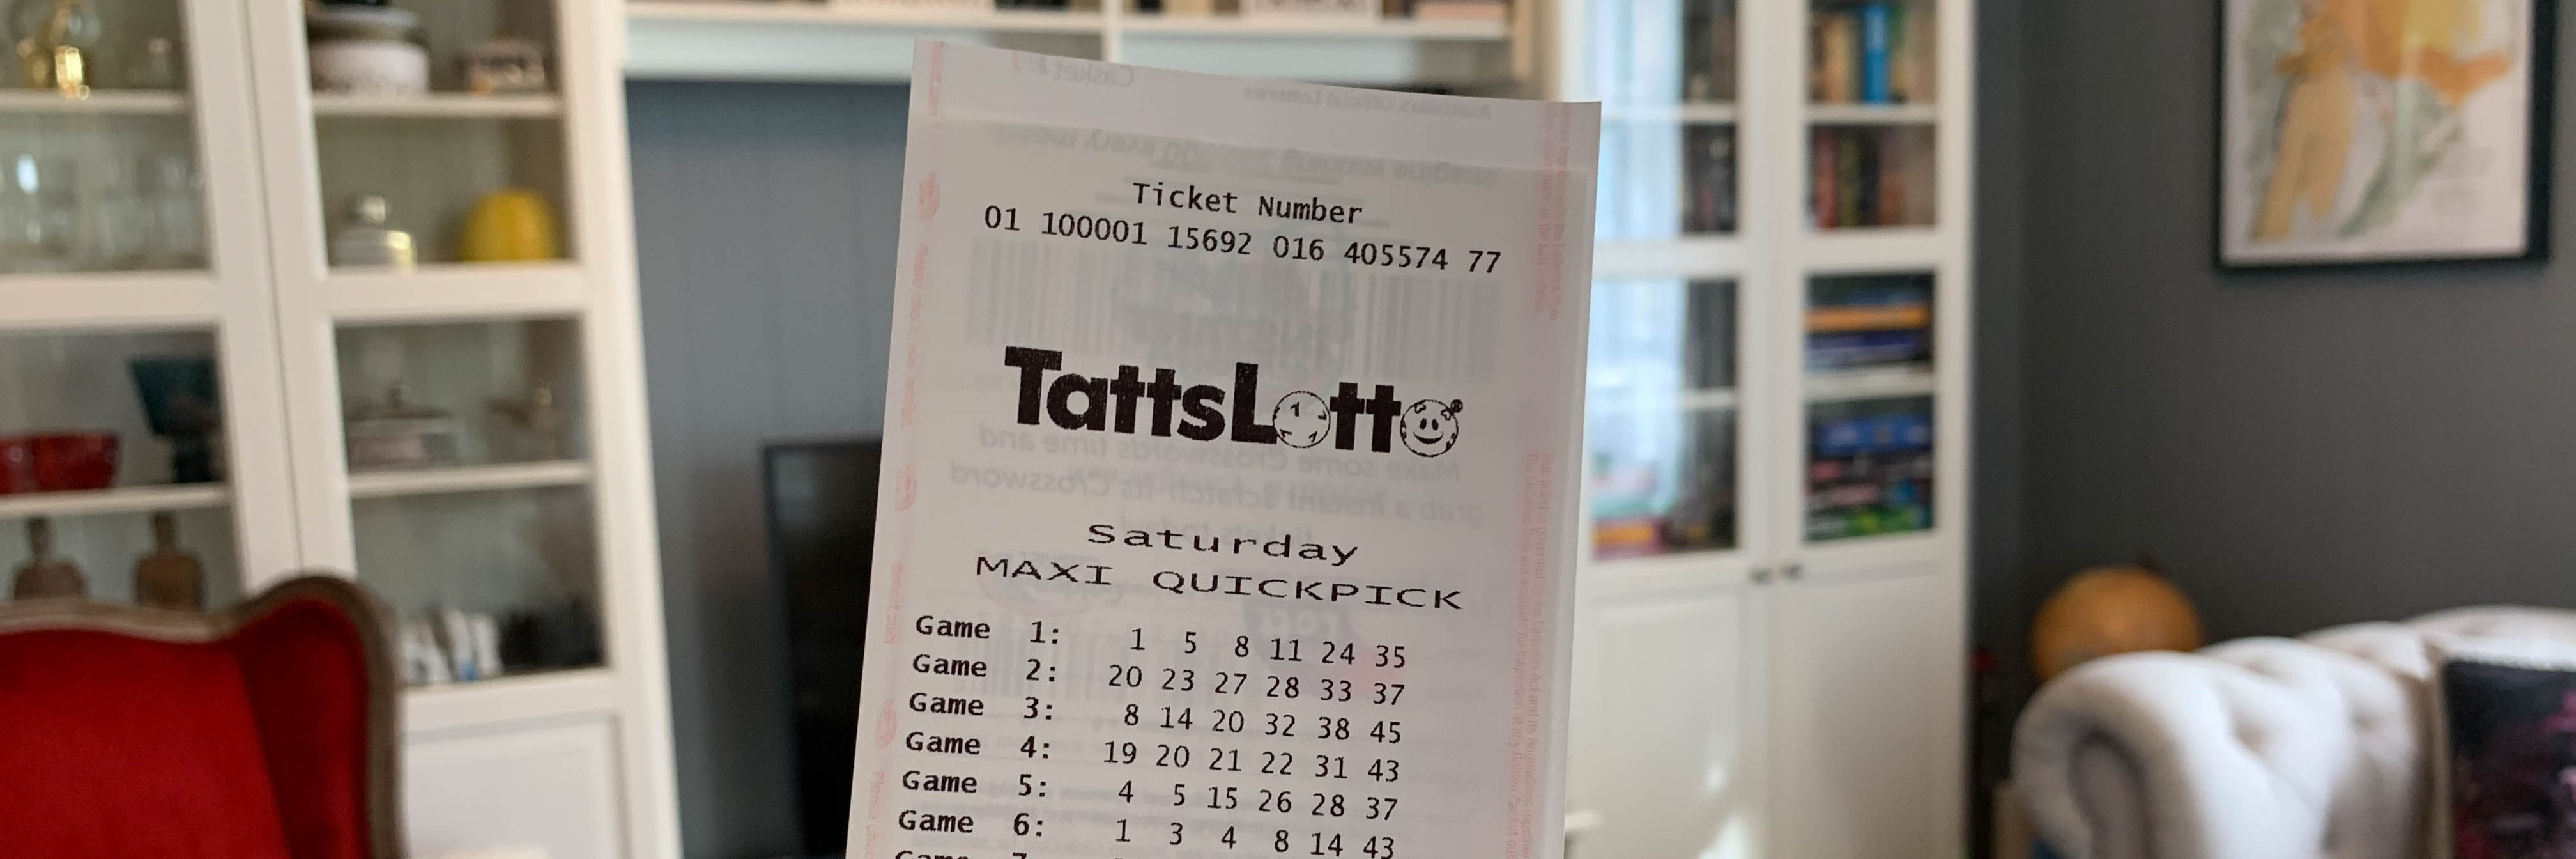 tattslotto ticket number